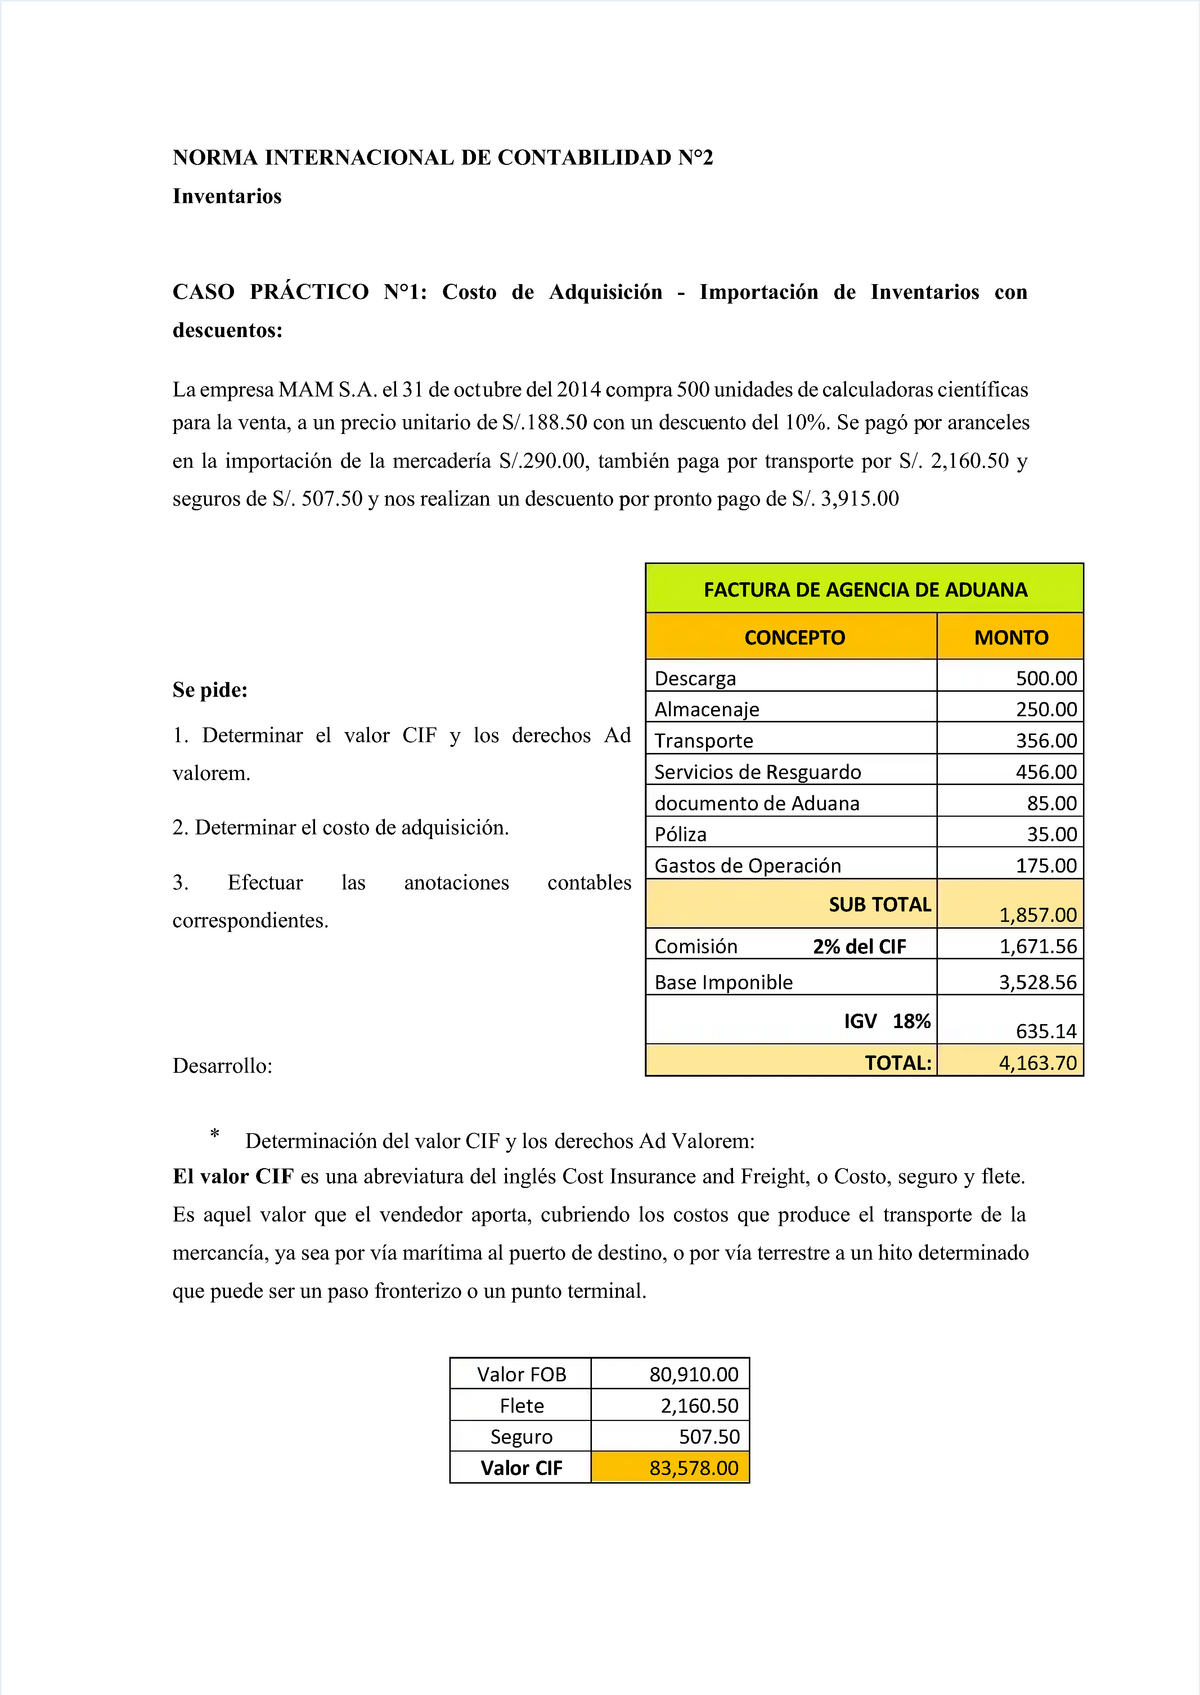 Pdf Nic 2 Compress Casos Practicos De La Nic 2 Norma Internacional De Contabilidad N°2norma 9344